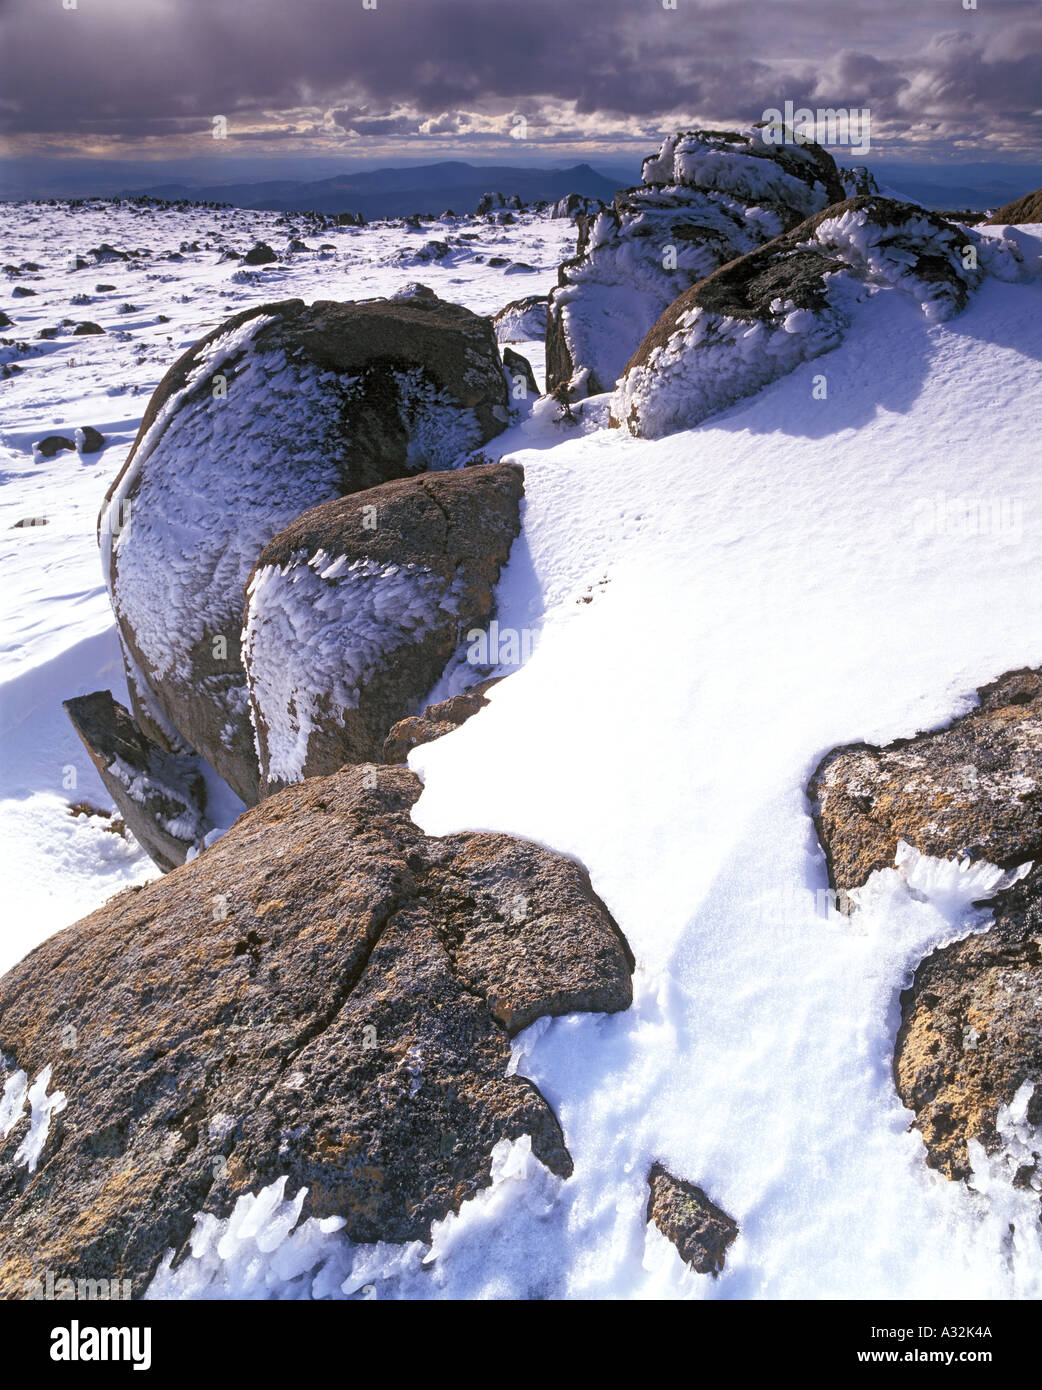 Mount Wellington in Snow Stock Photo